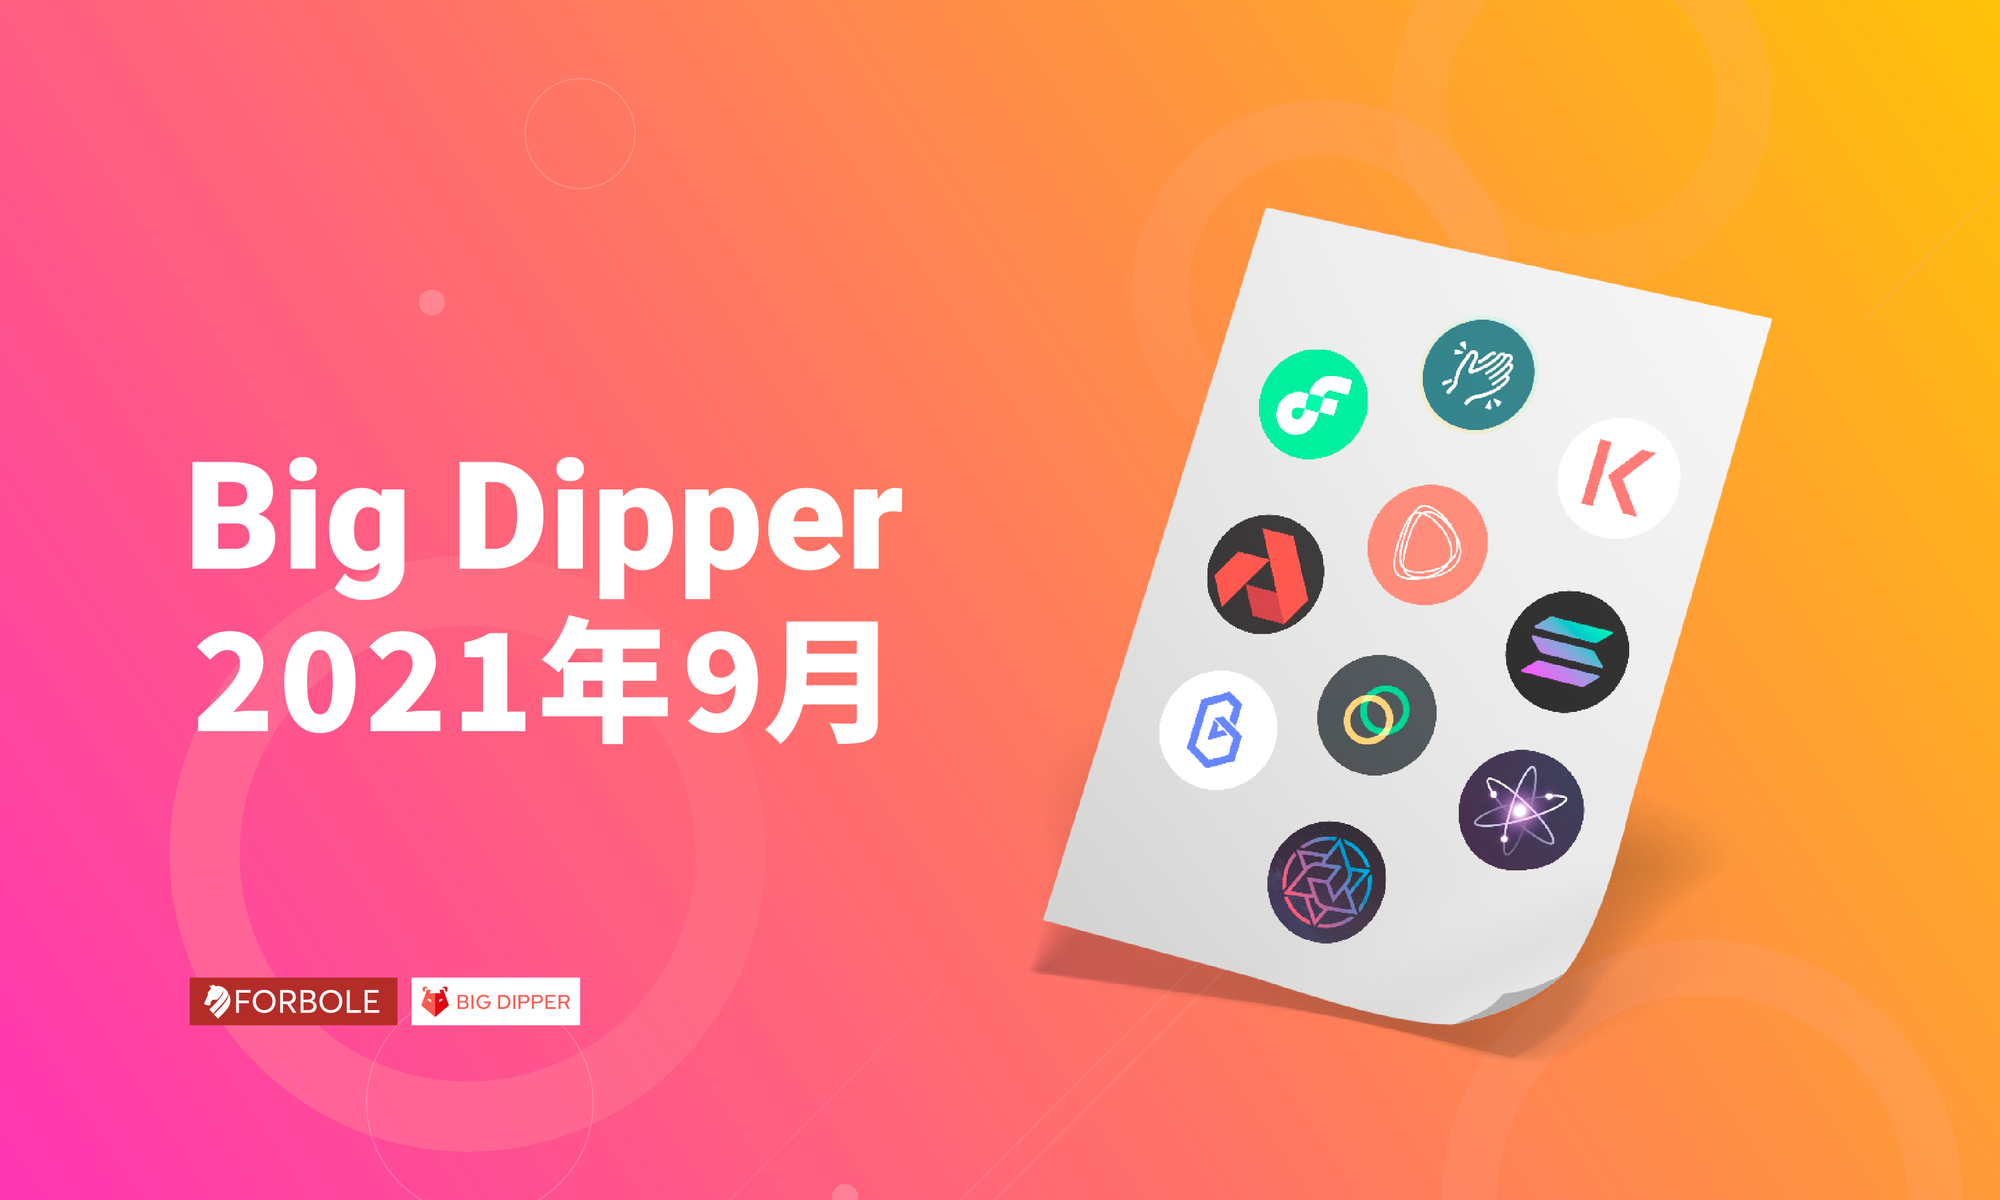 Big Dipper 每月回顧 - 2021 年 9 月